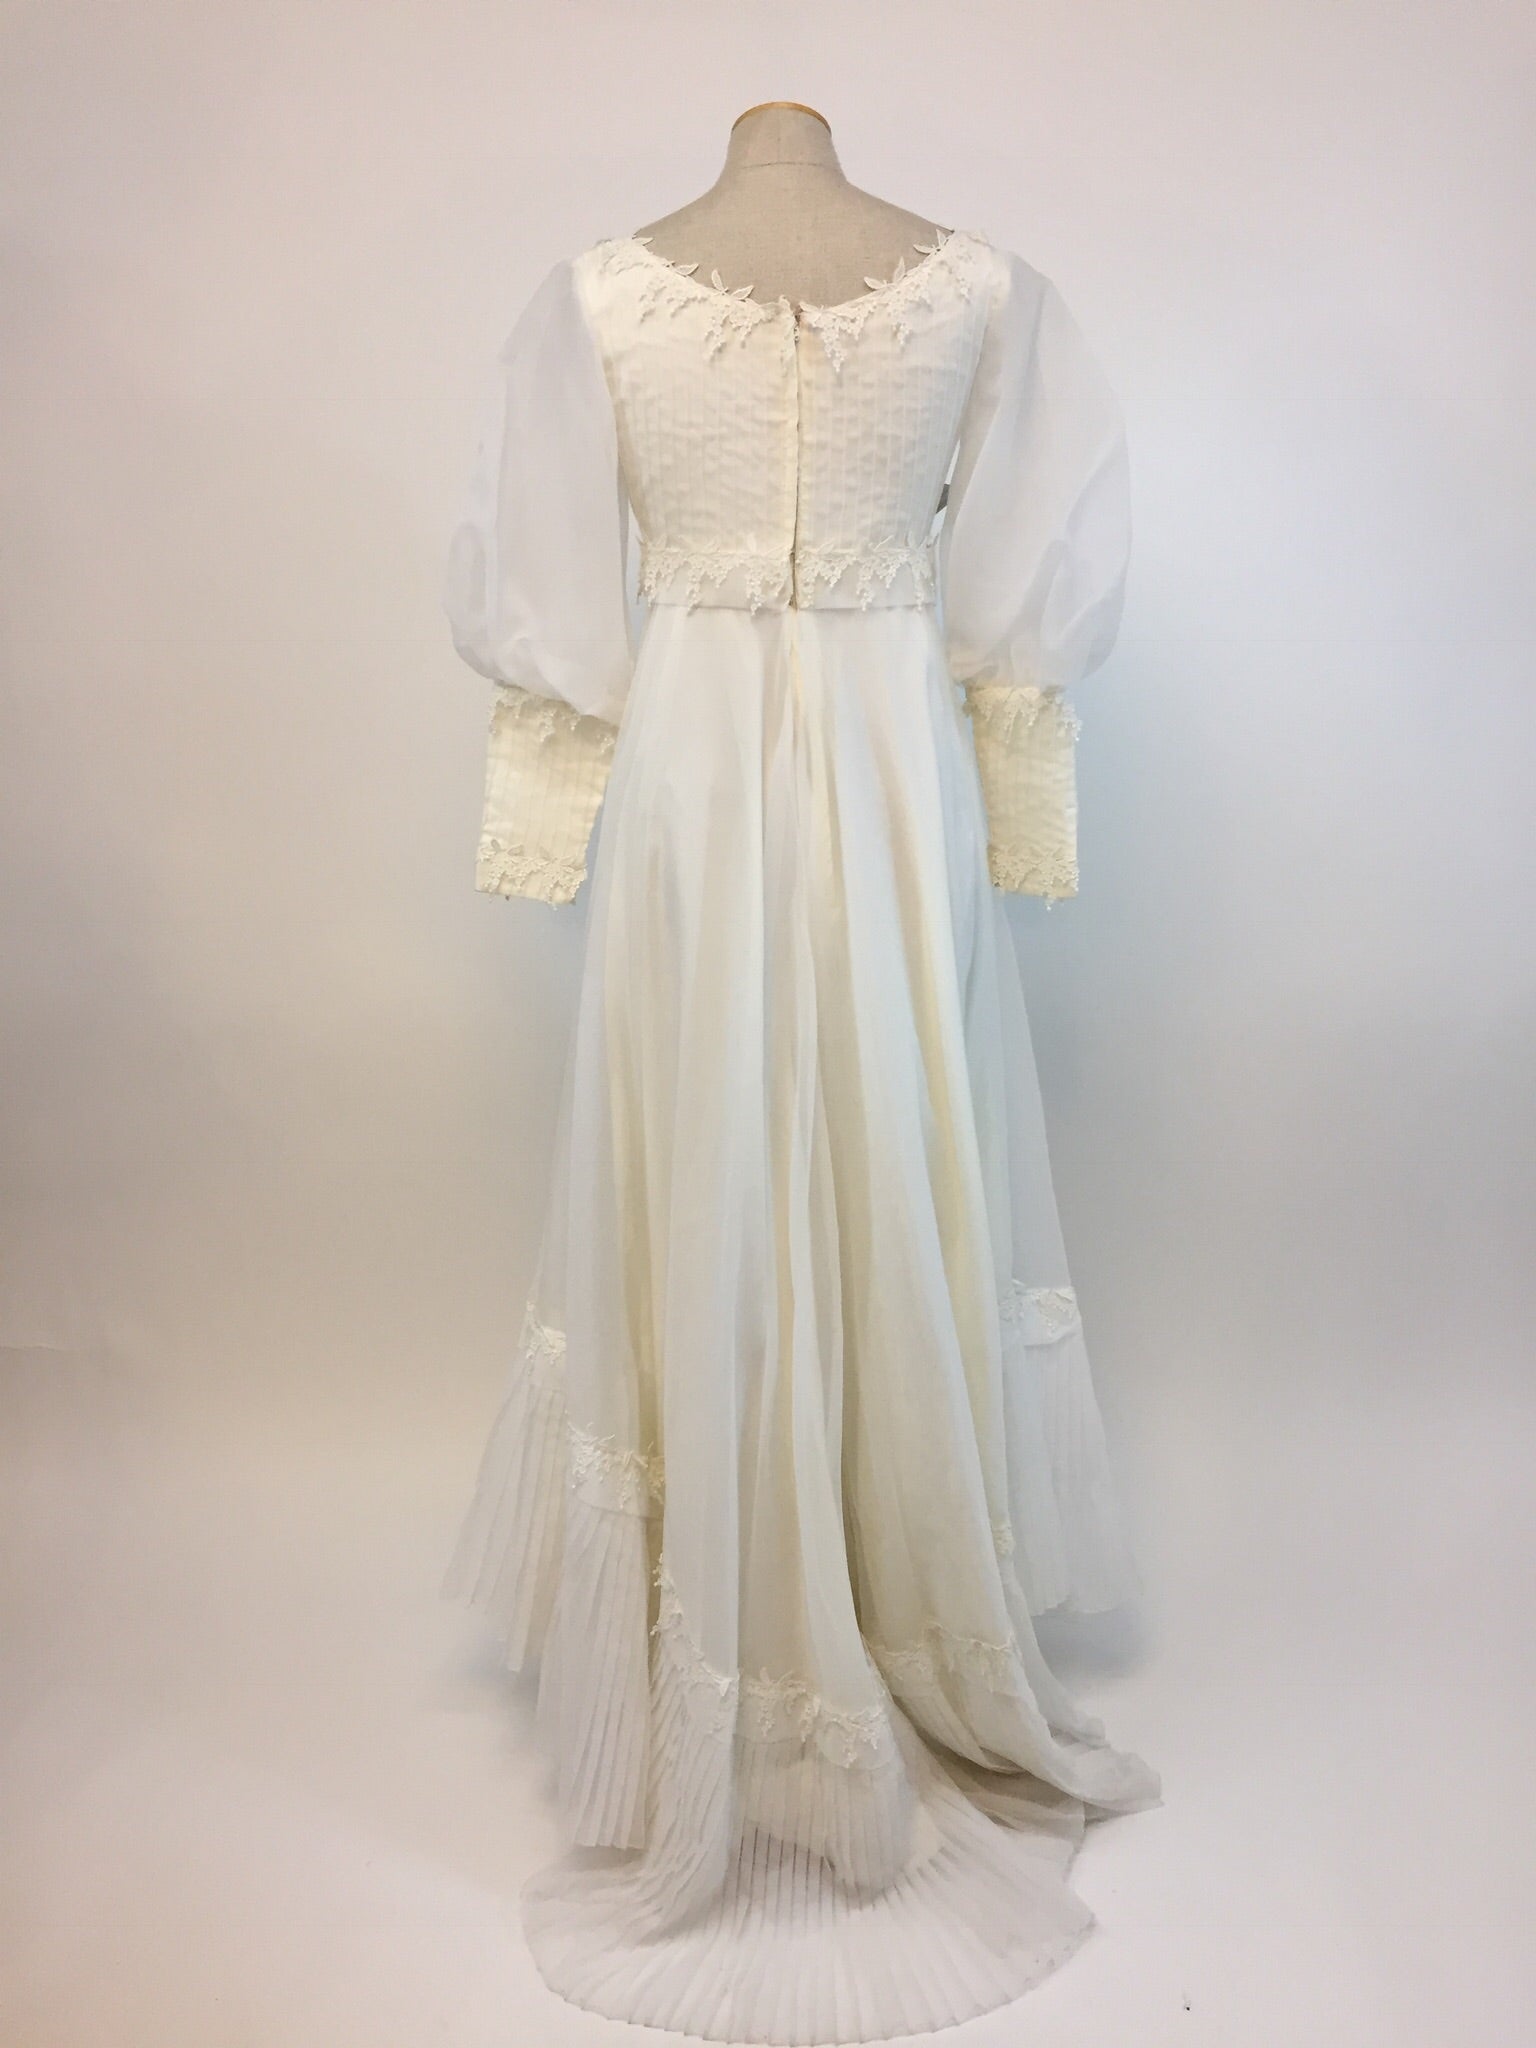 Wisteria ‘70s Boho Wedding Dress - Antiquaire Boutique 